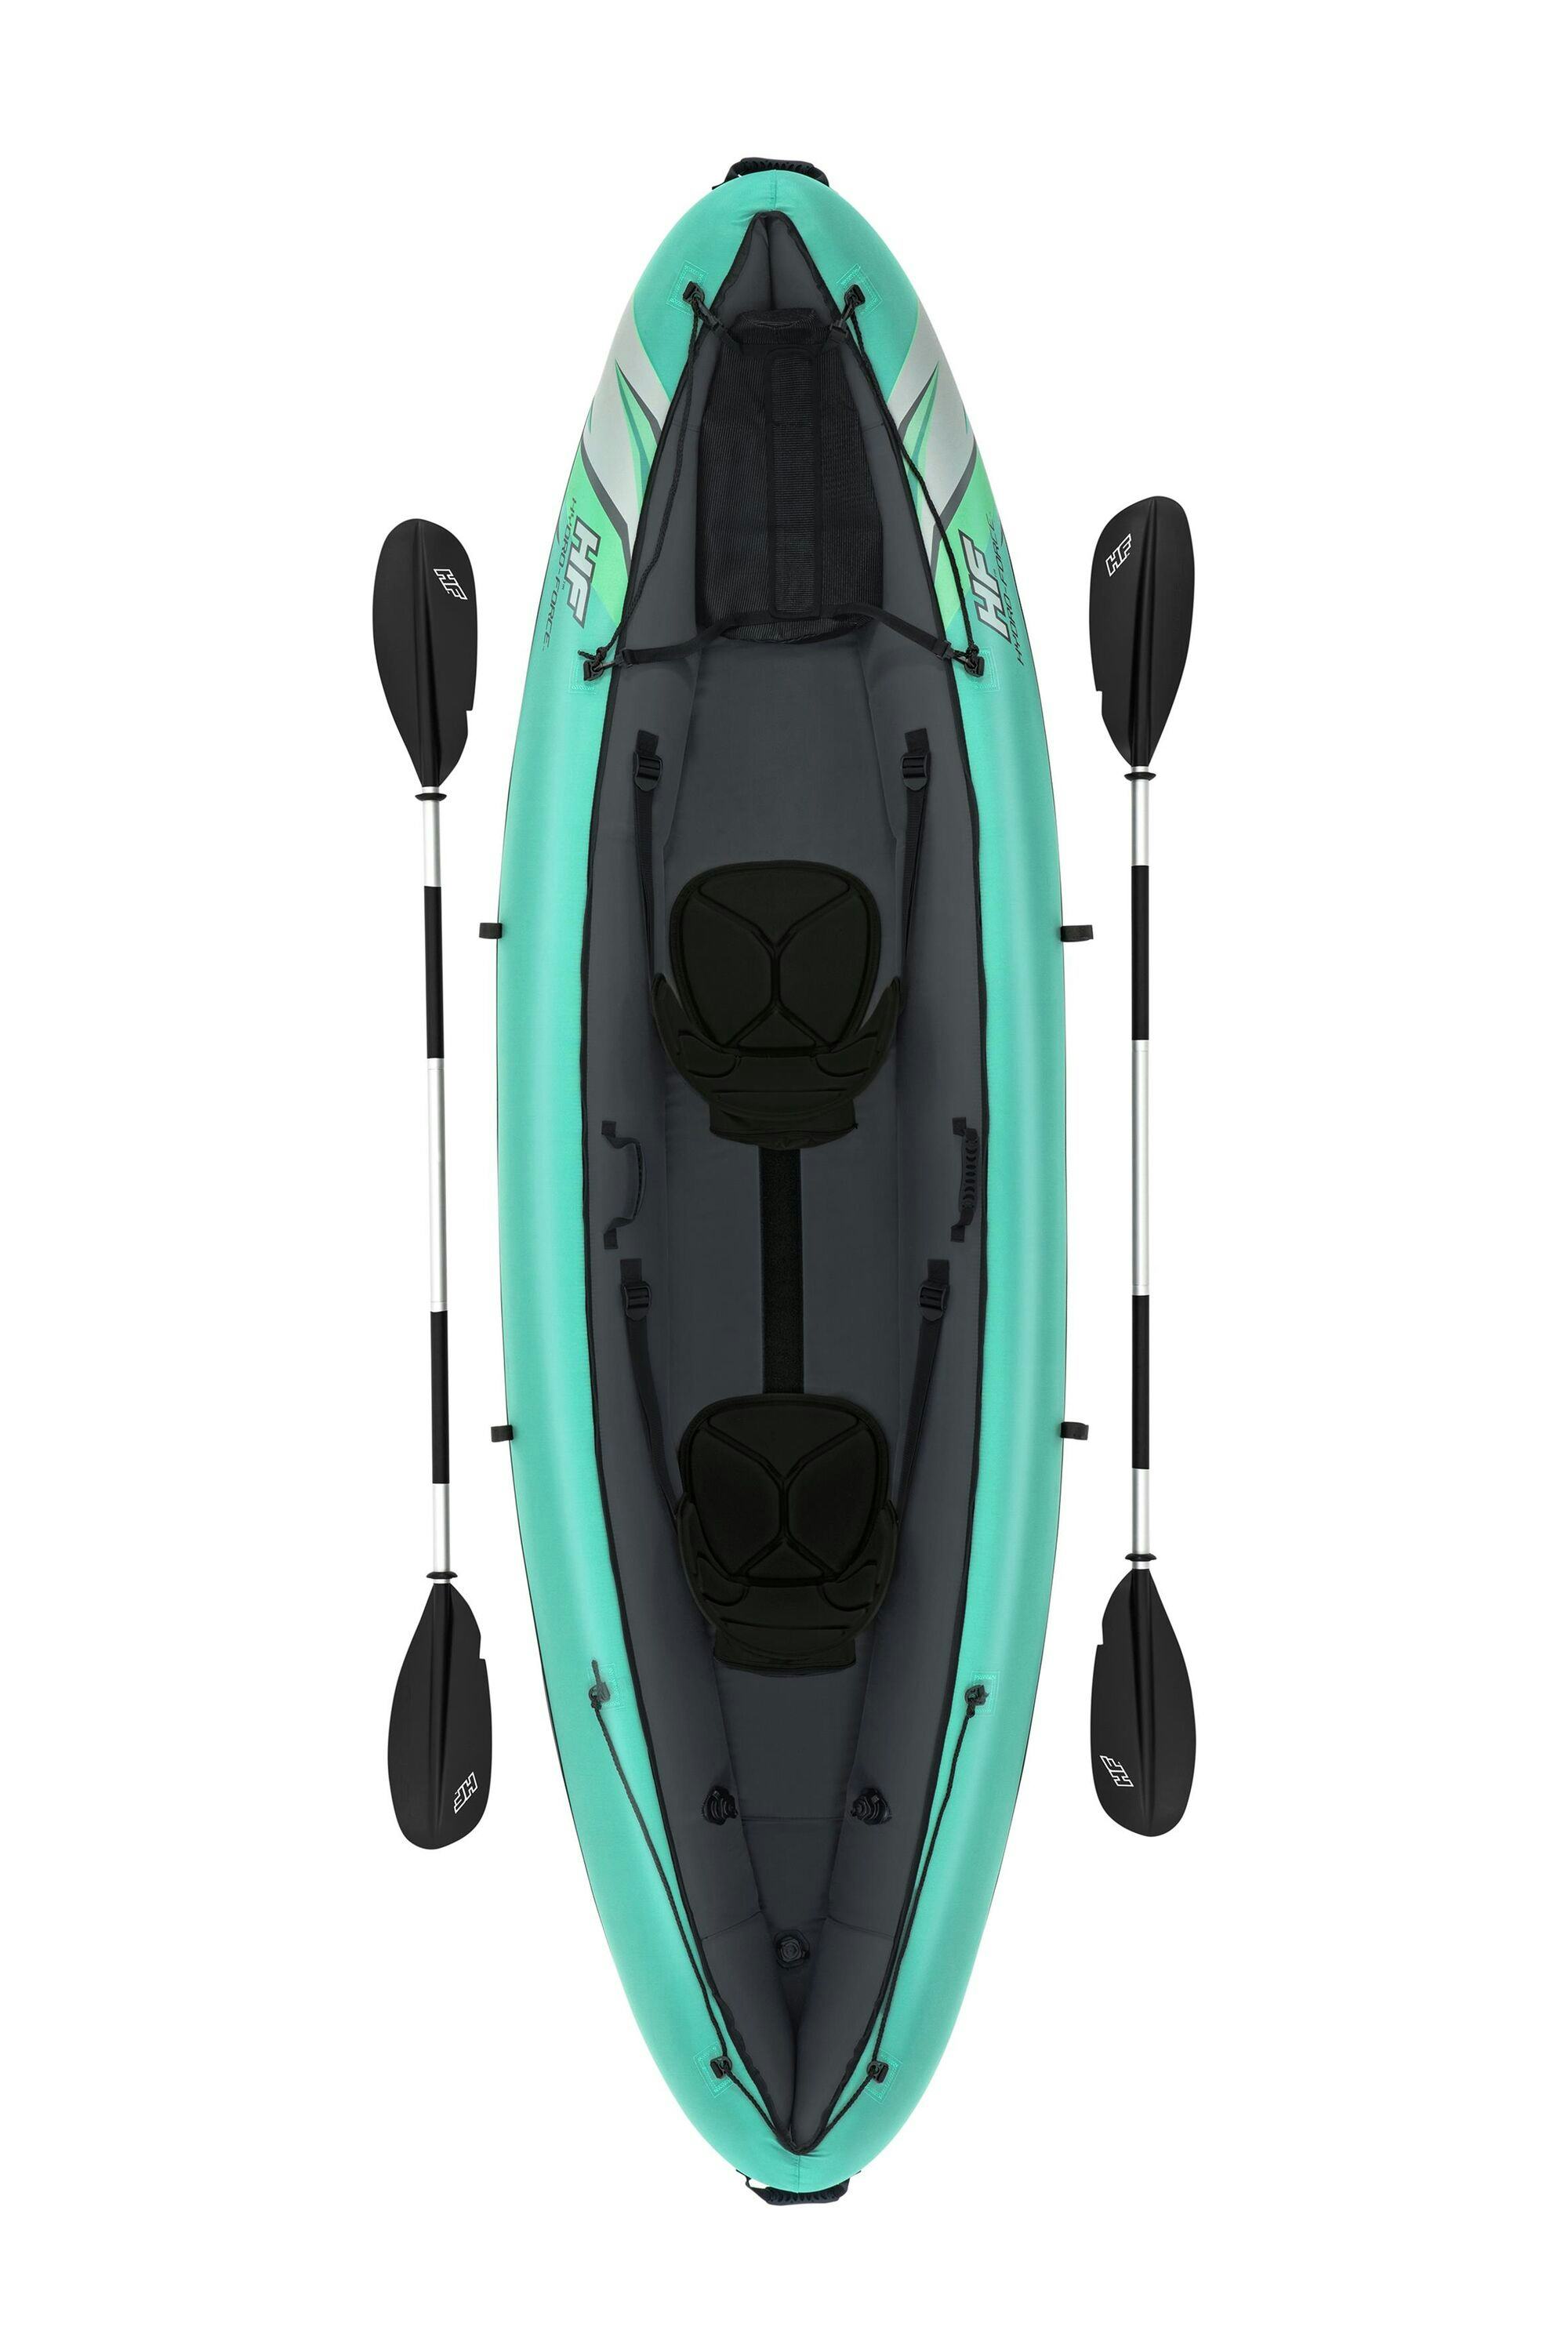 Sports d'eau Kayak gonflable Hydro-Force™ Ventura Elite X2 330 x 86 cm 2 adultes, pagaie, pompe Bestway 10